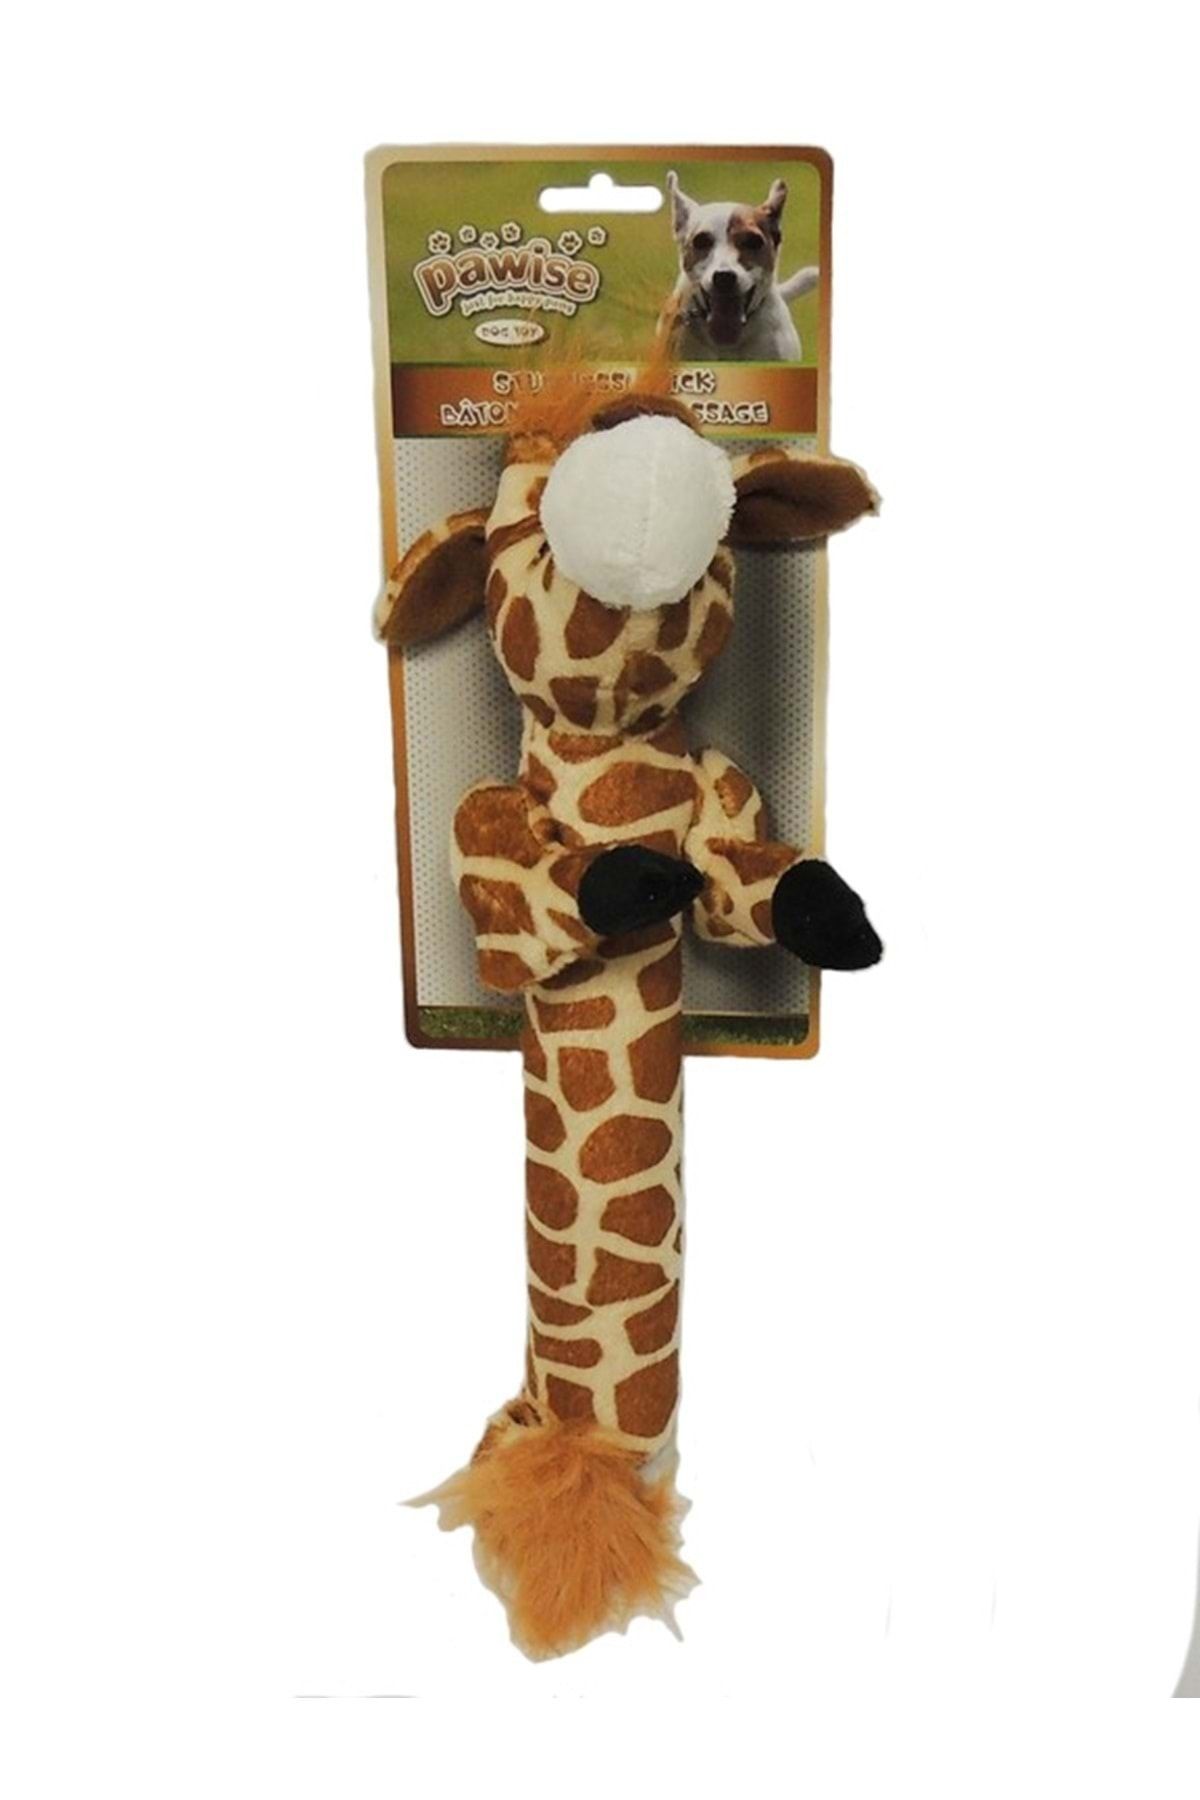 Pawise 15083 Stick Giraffe - Çubuk Zürafa 40x18x8cm